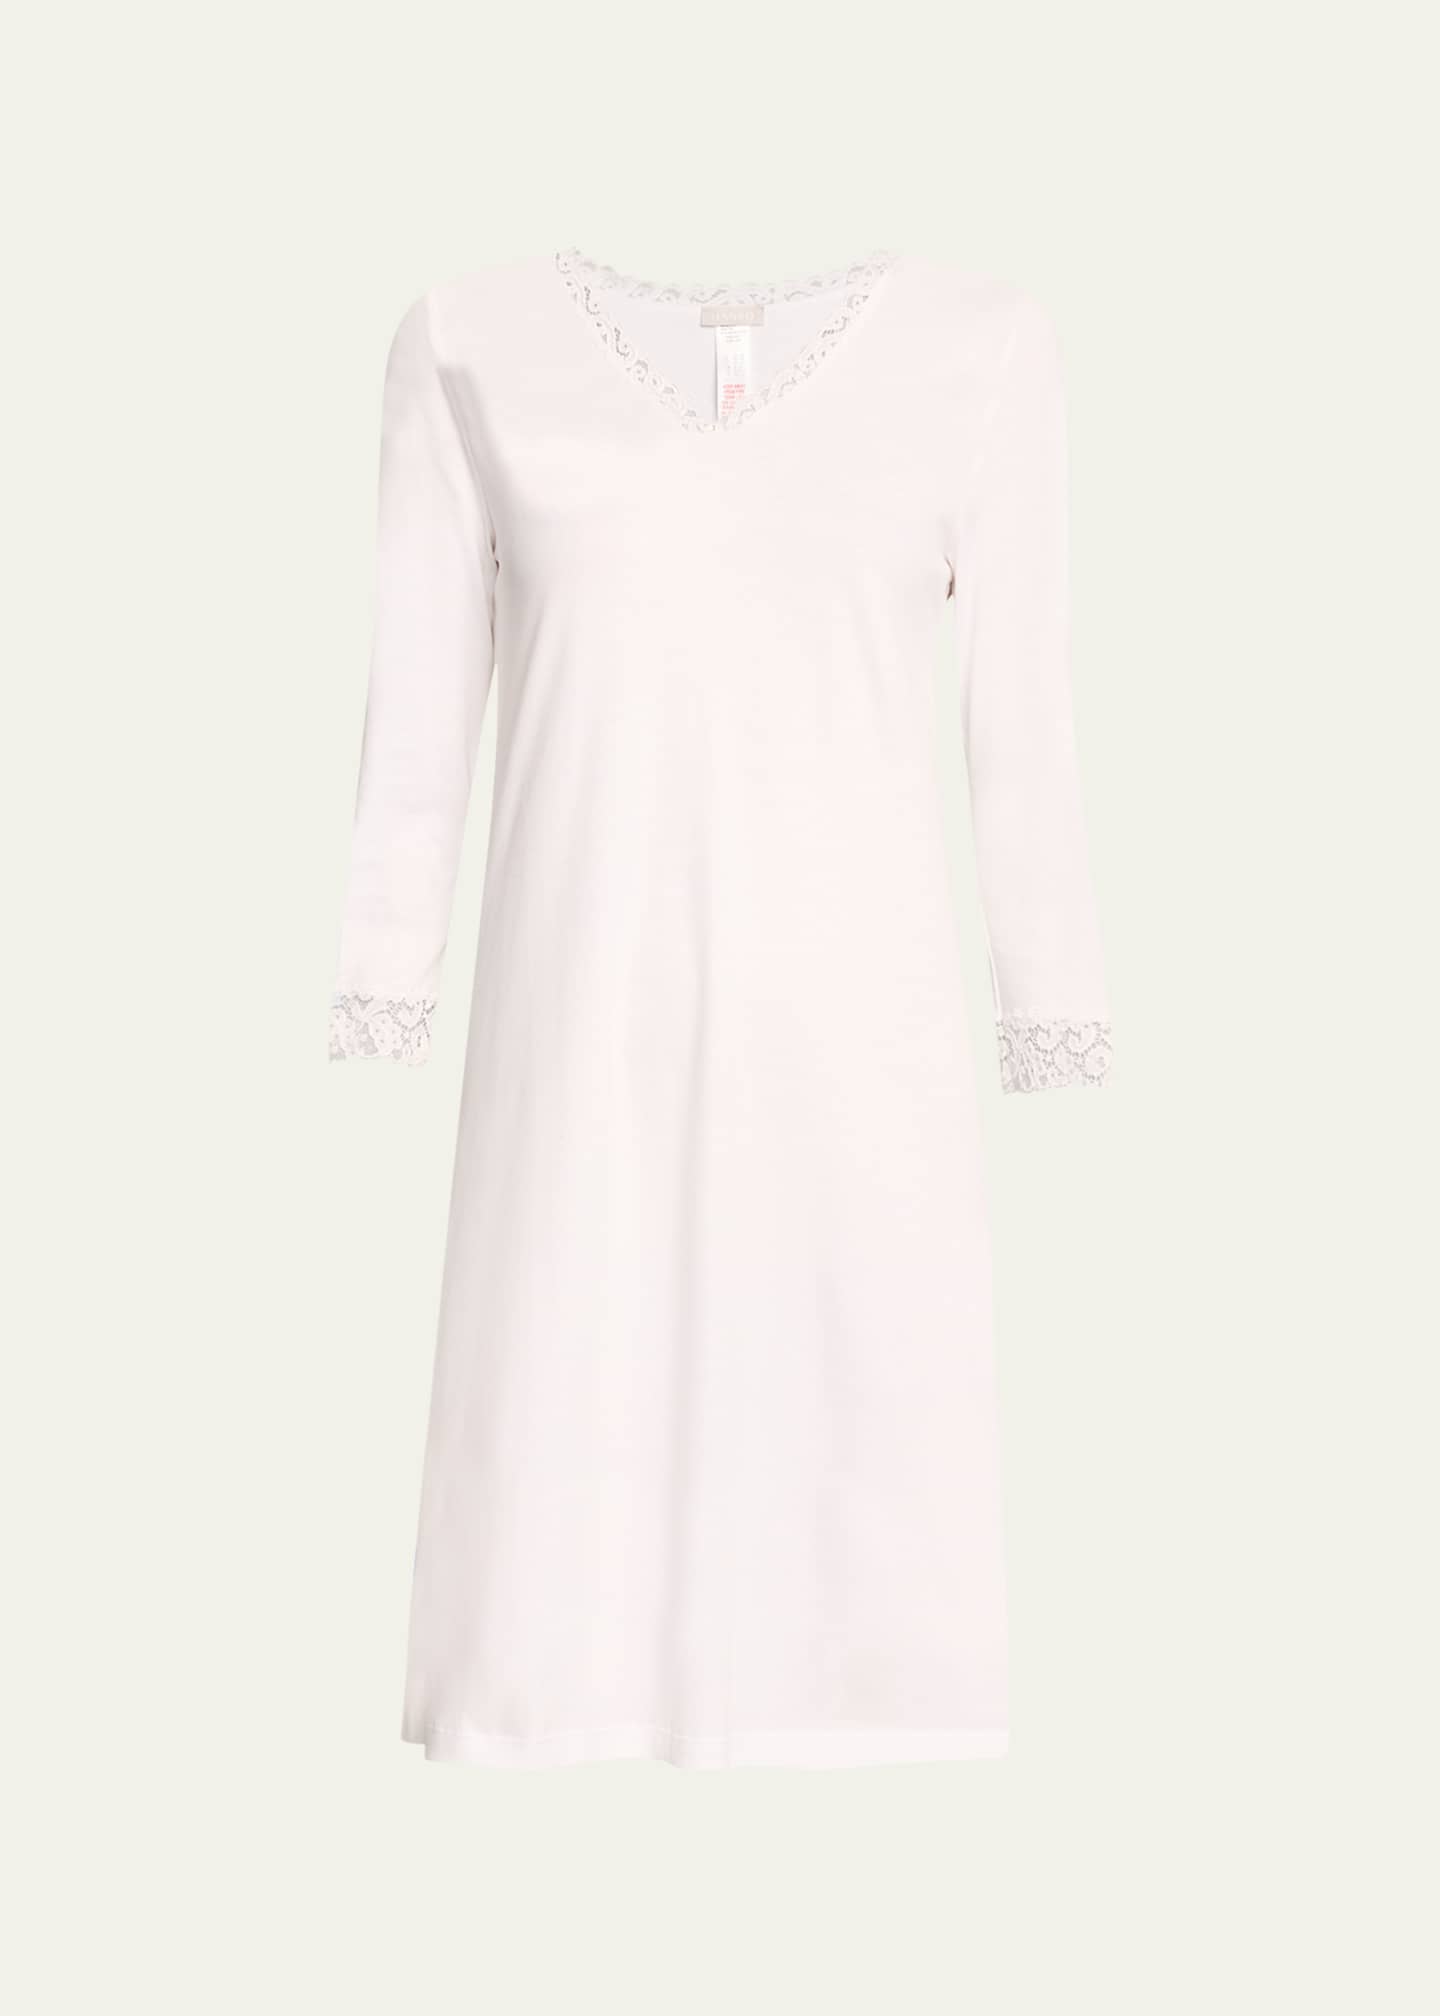 Hanro Cotton Lace Trim Nightgown